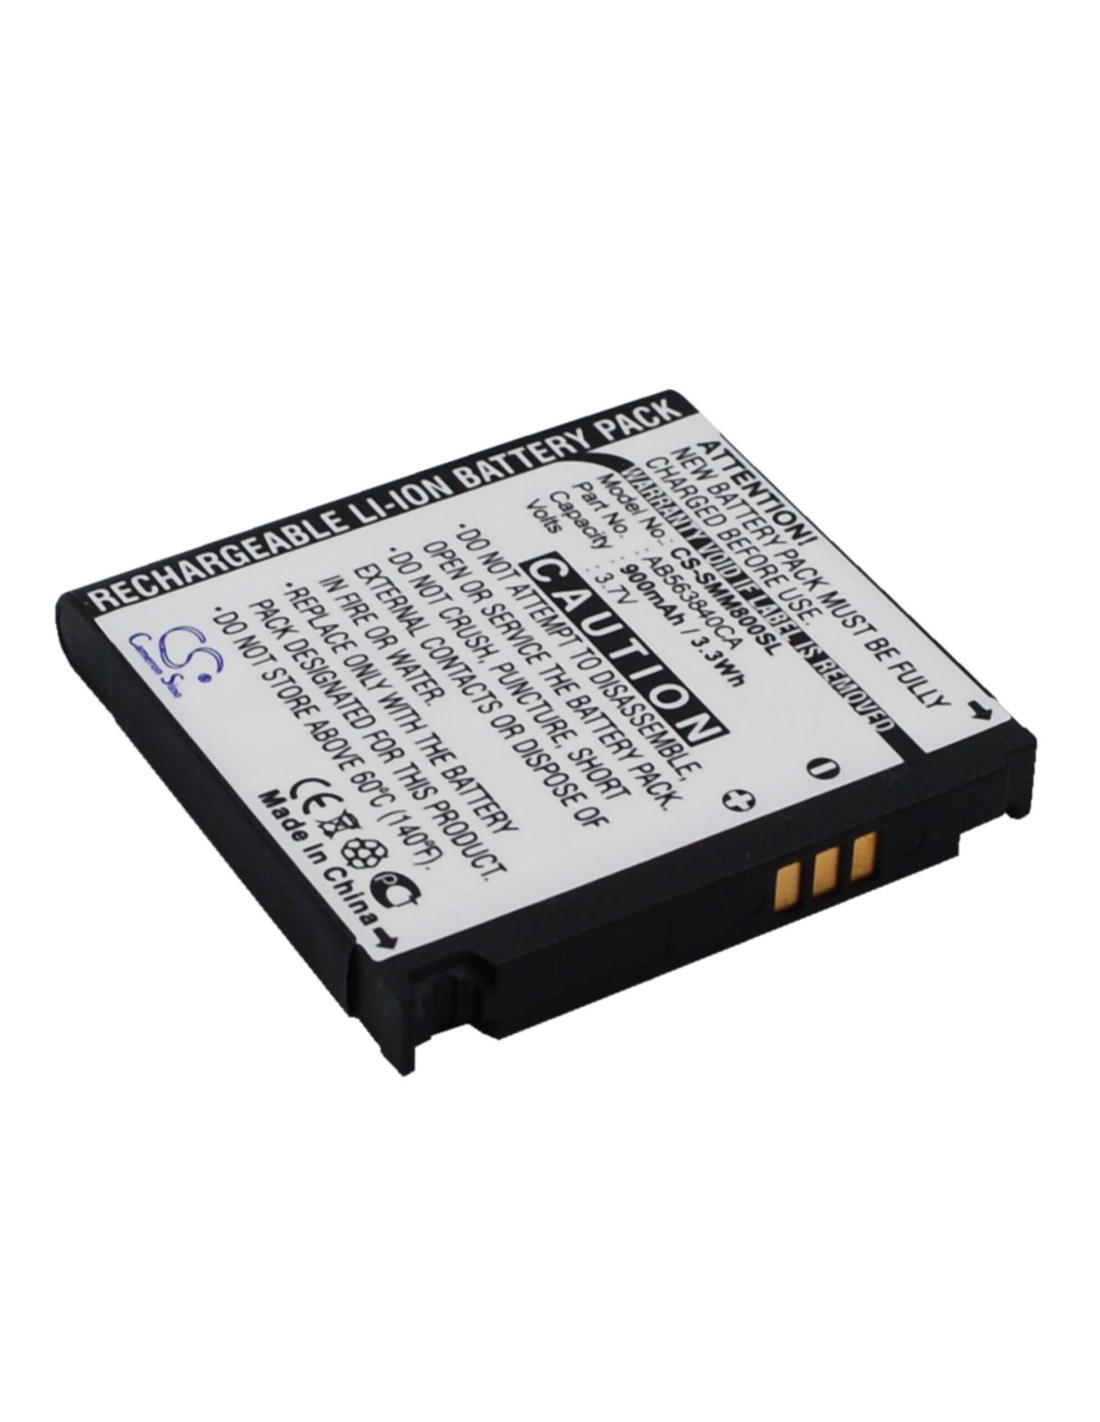 Battery for Samsung Instinct M800, SPH-M800, SGH-T929 3.7V, 900mAh - 3.33Wh